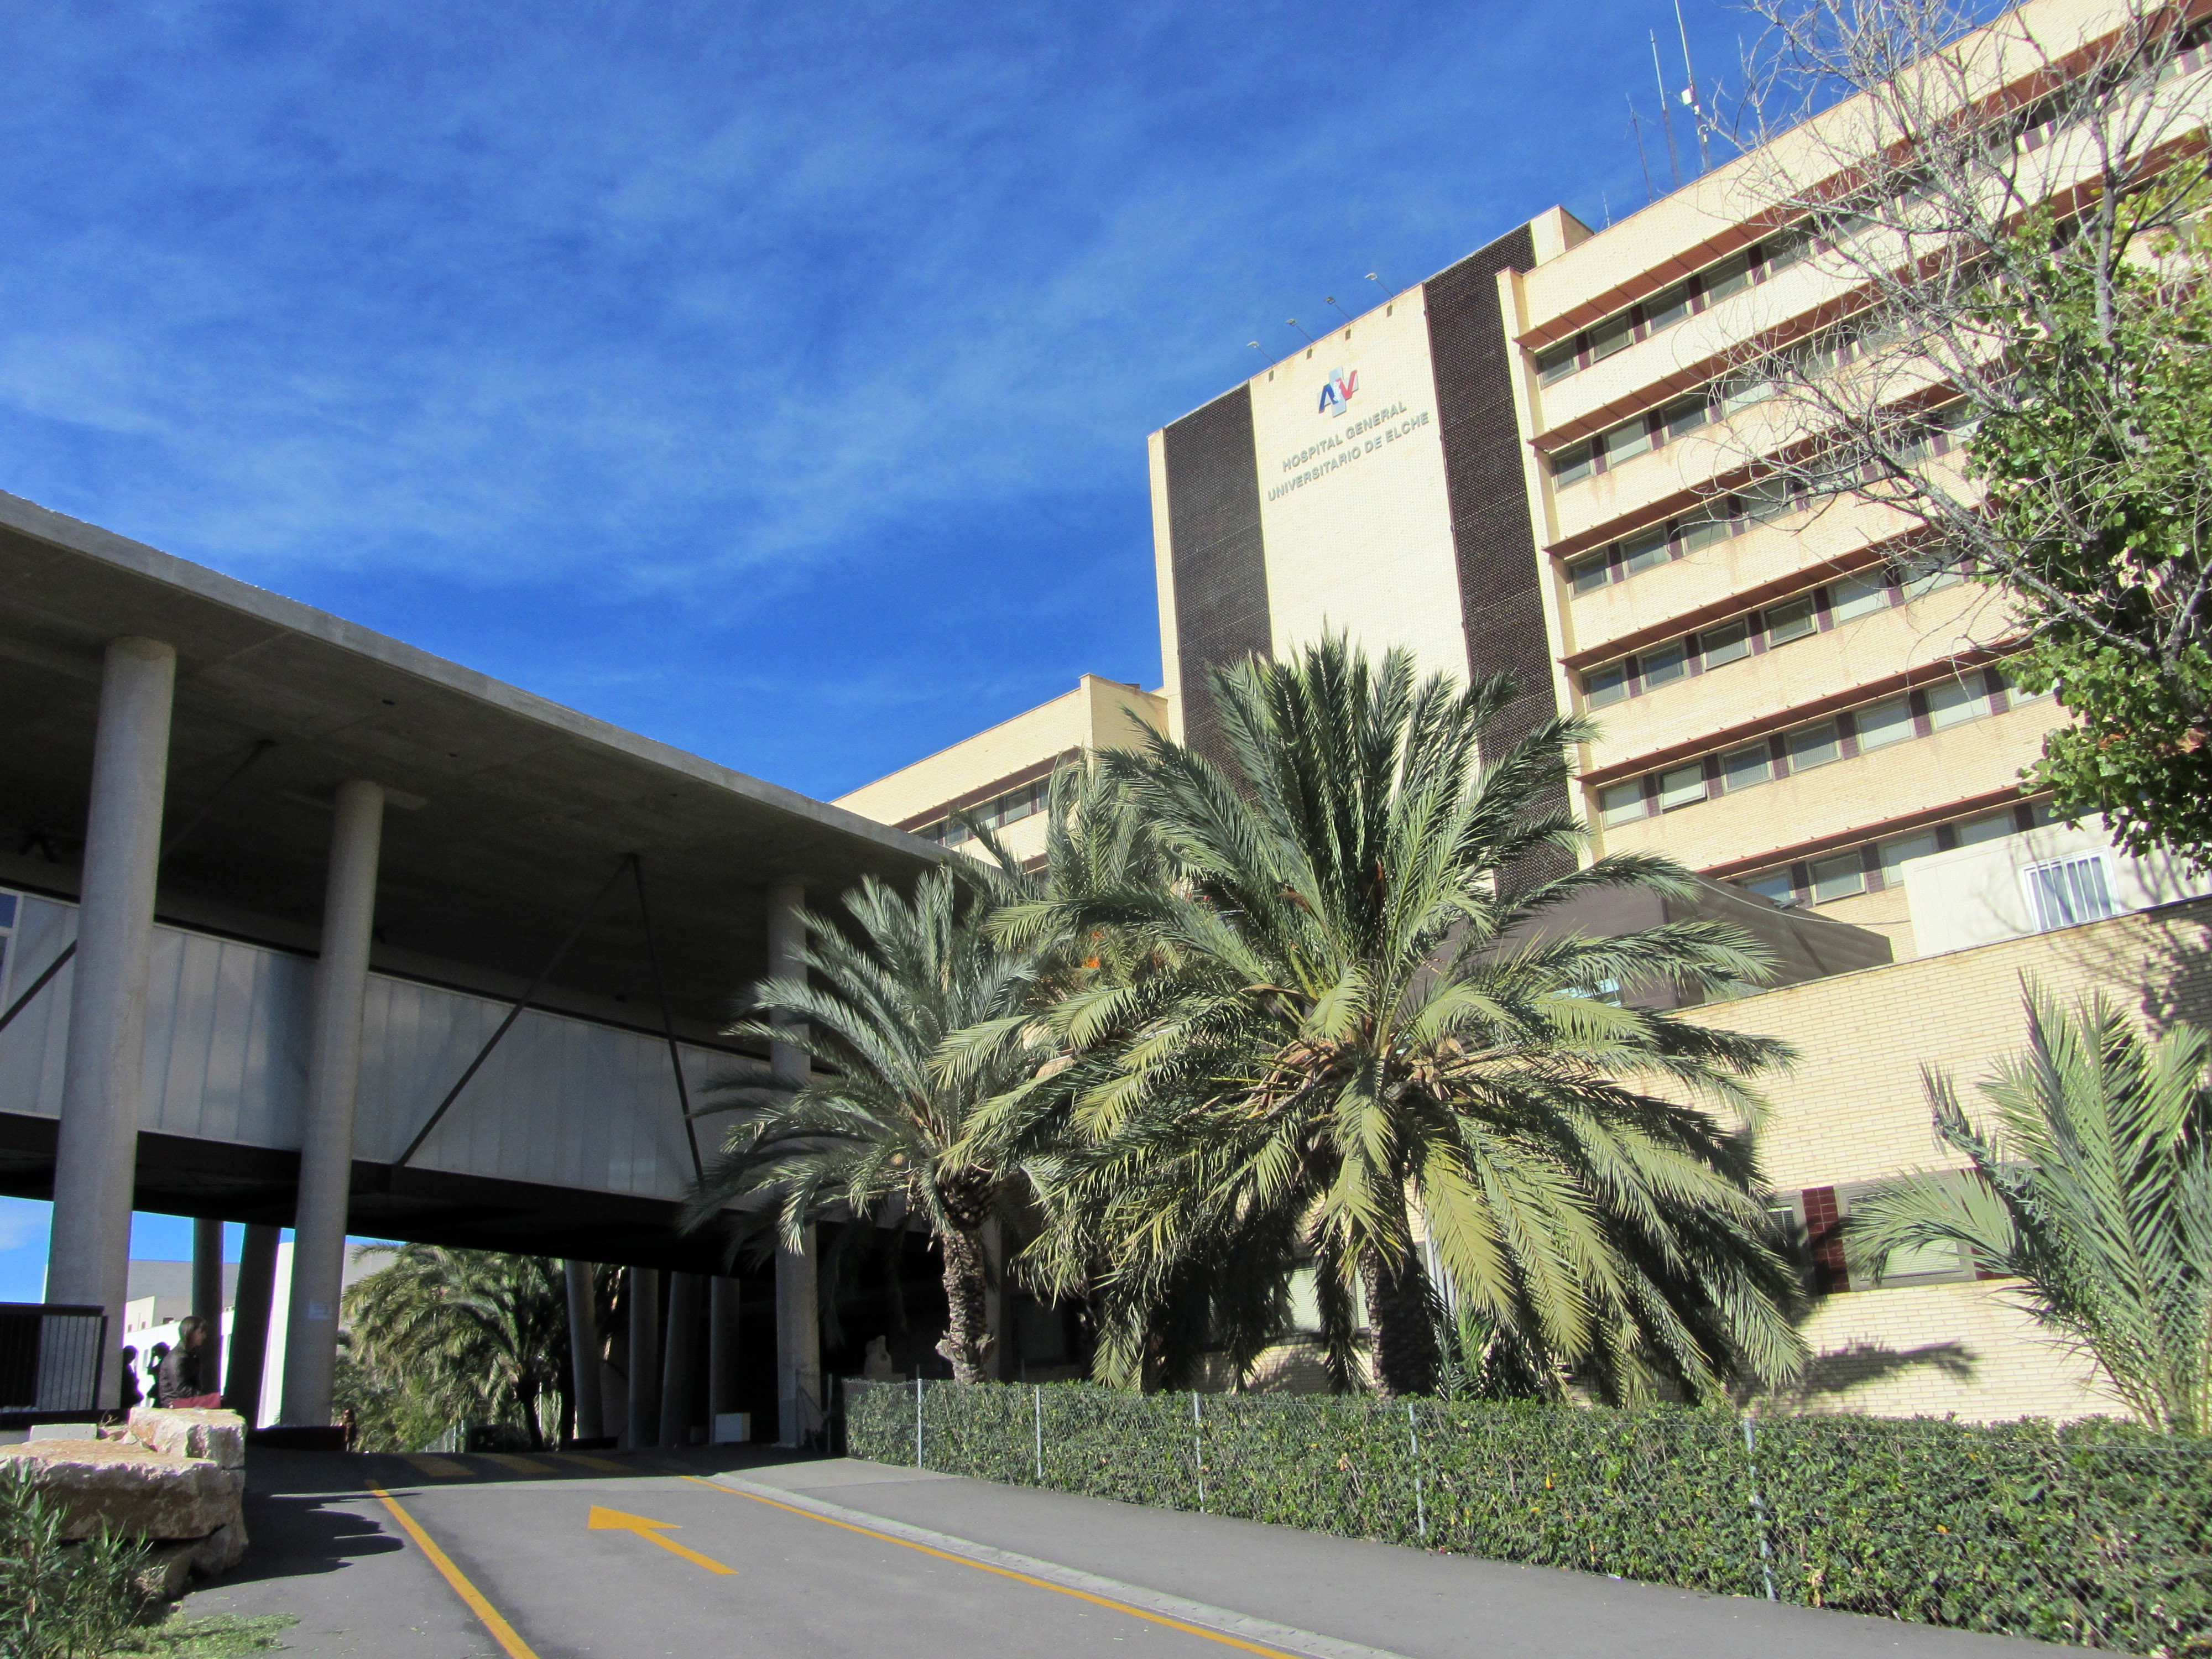 El Hospital General Universitario De Elche Acoge El Taller “De La Idea Al Proyecto” Para Profesional